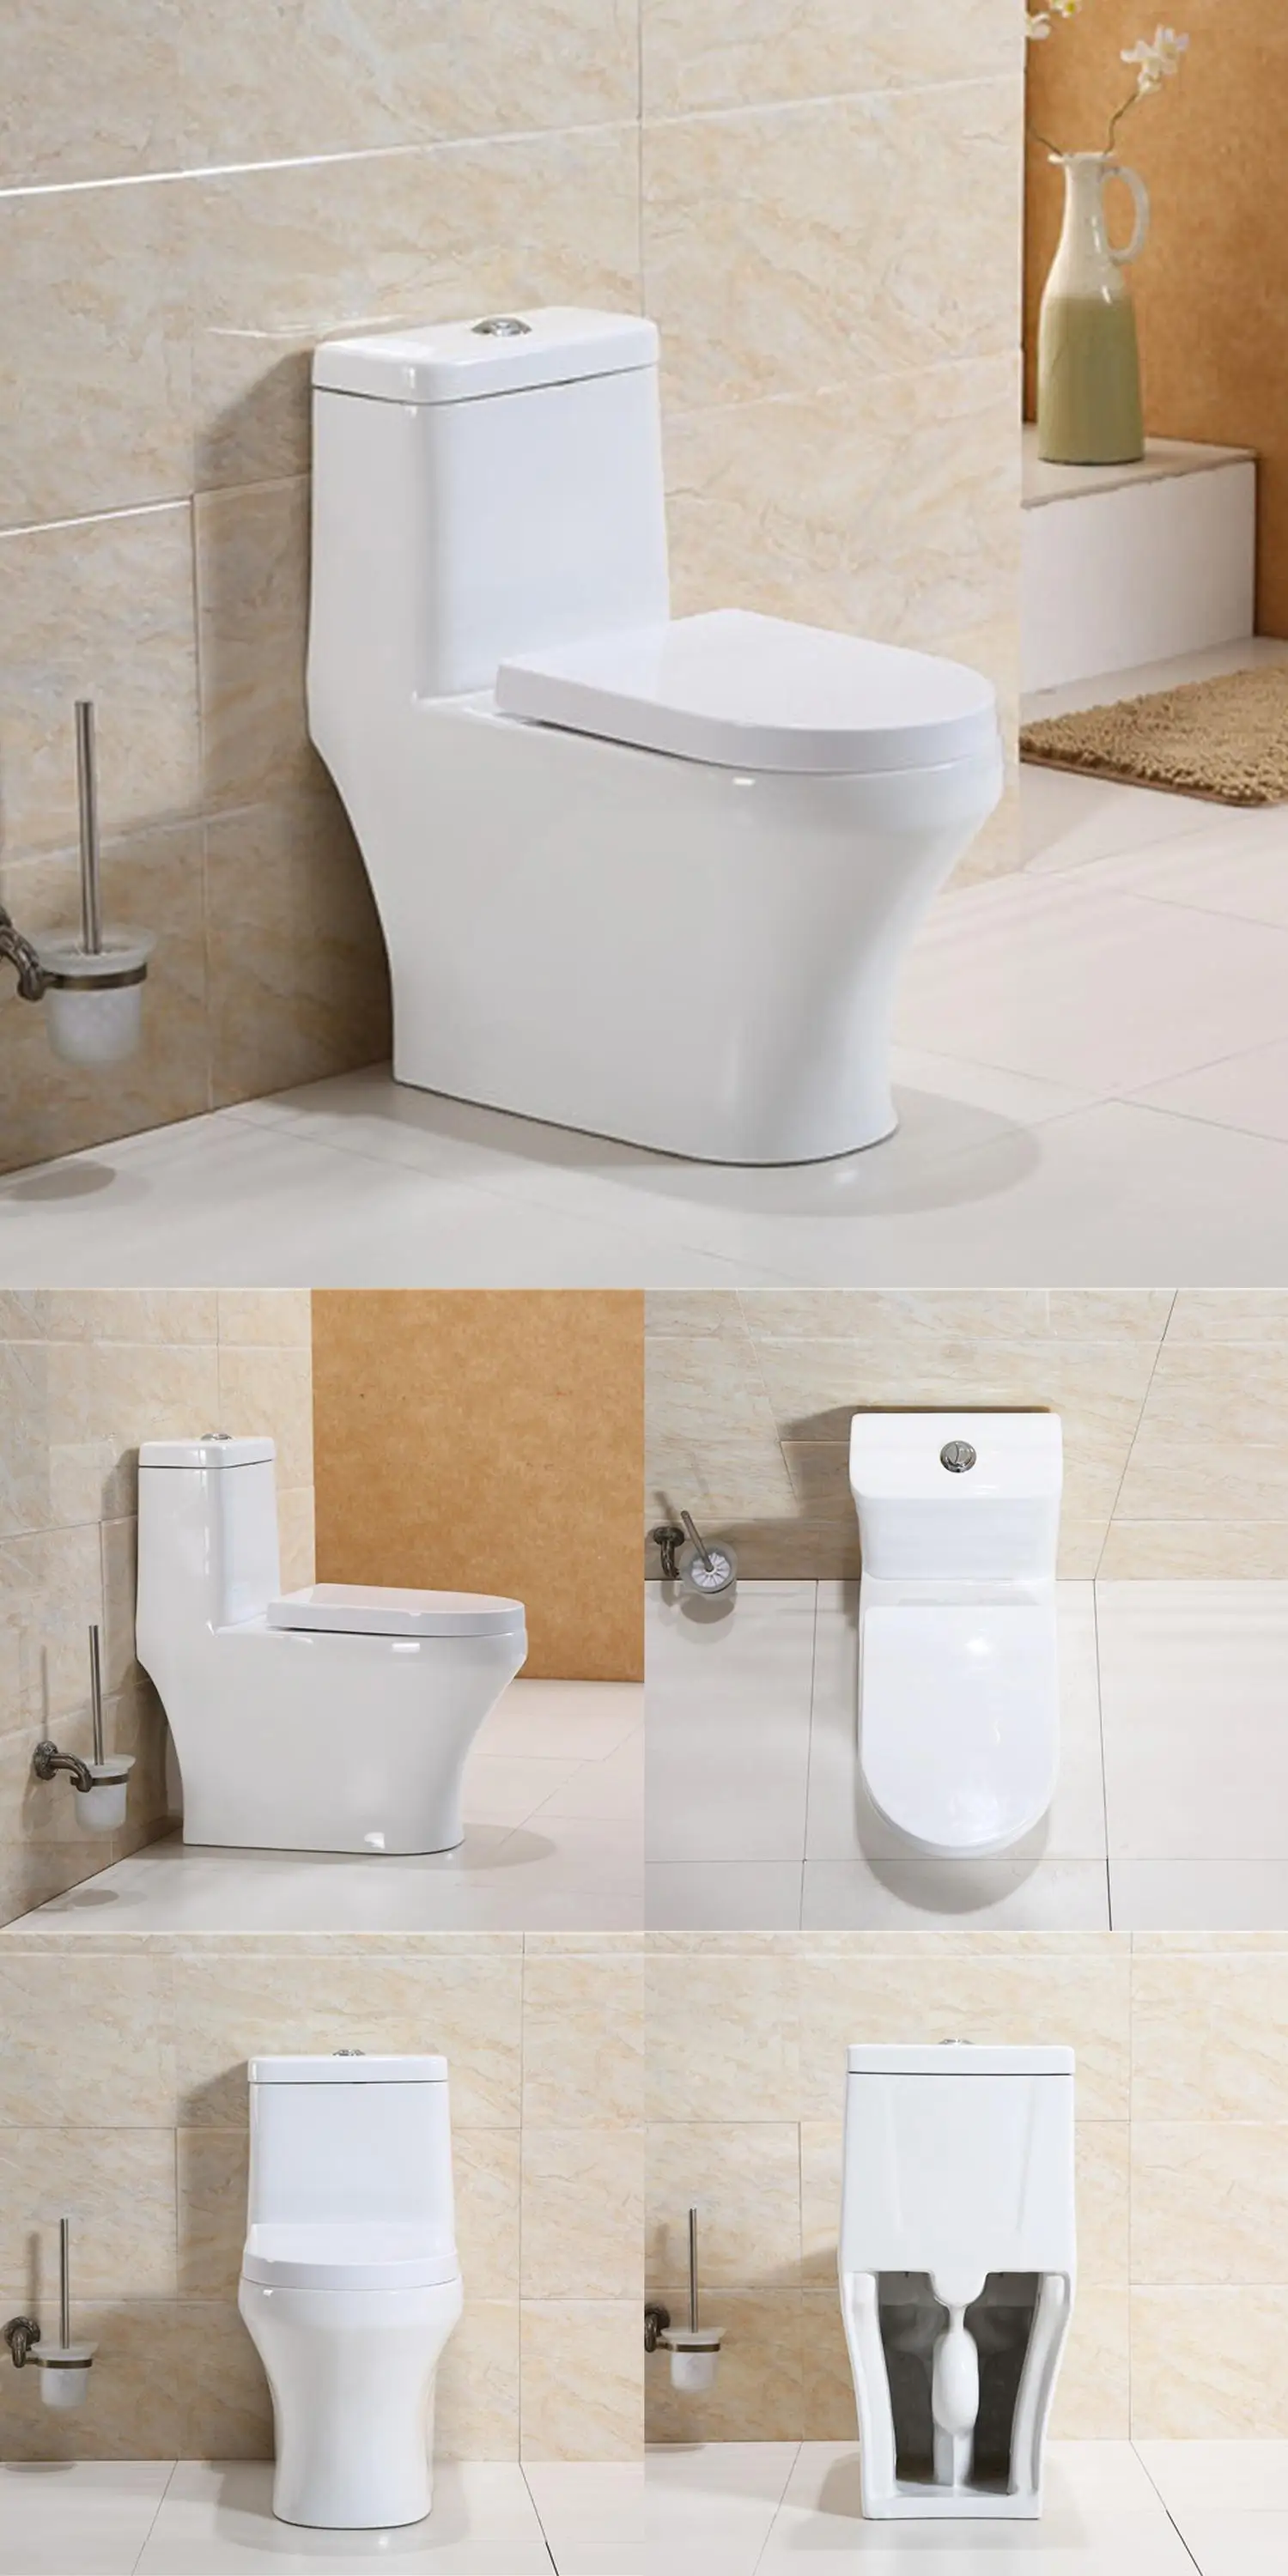 Chaozhou Sanitary Ware Bathroom Ceramic one Piece Wc Toilet JY1001